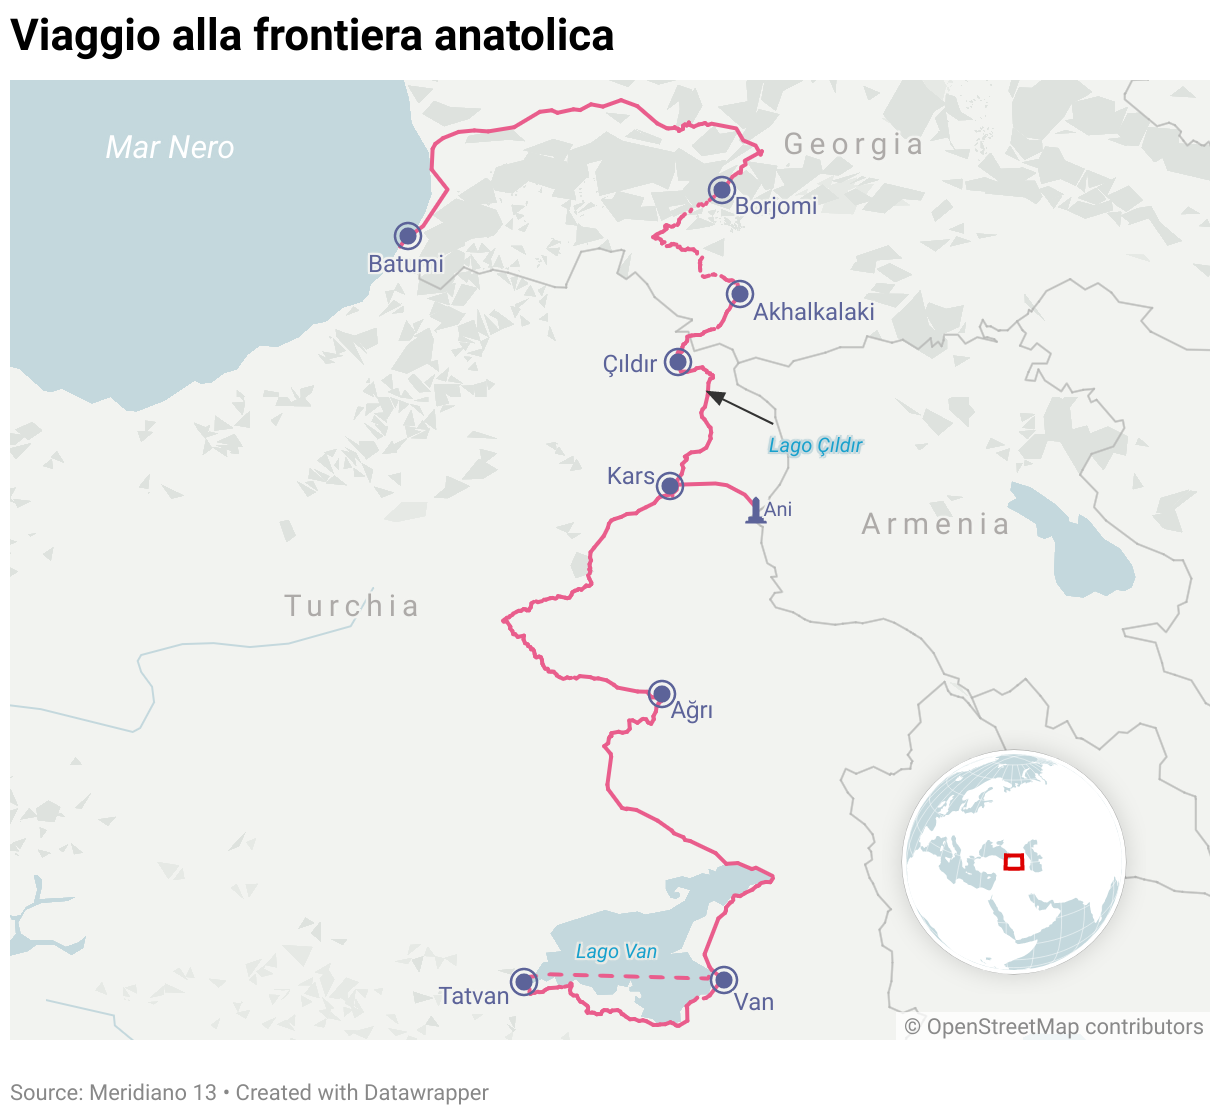 Il percorso del viaggio alla frontiera anatolica.